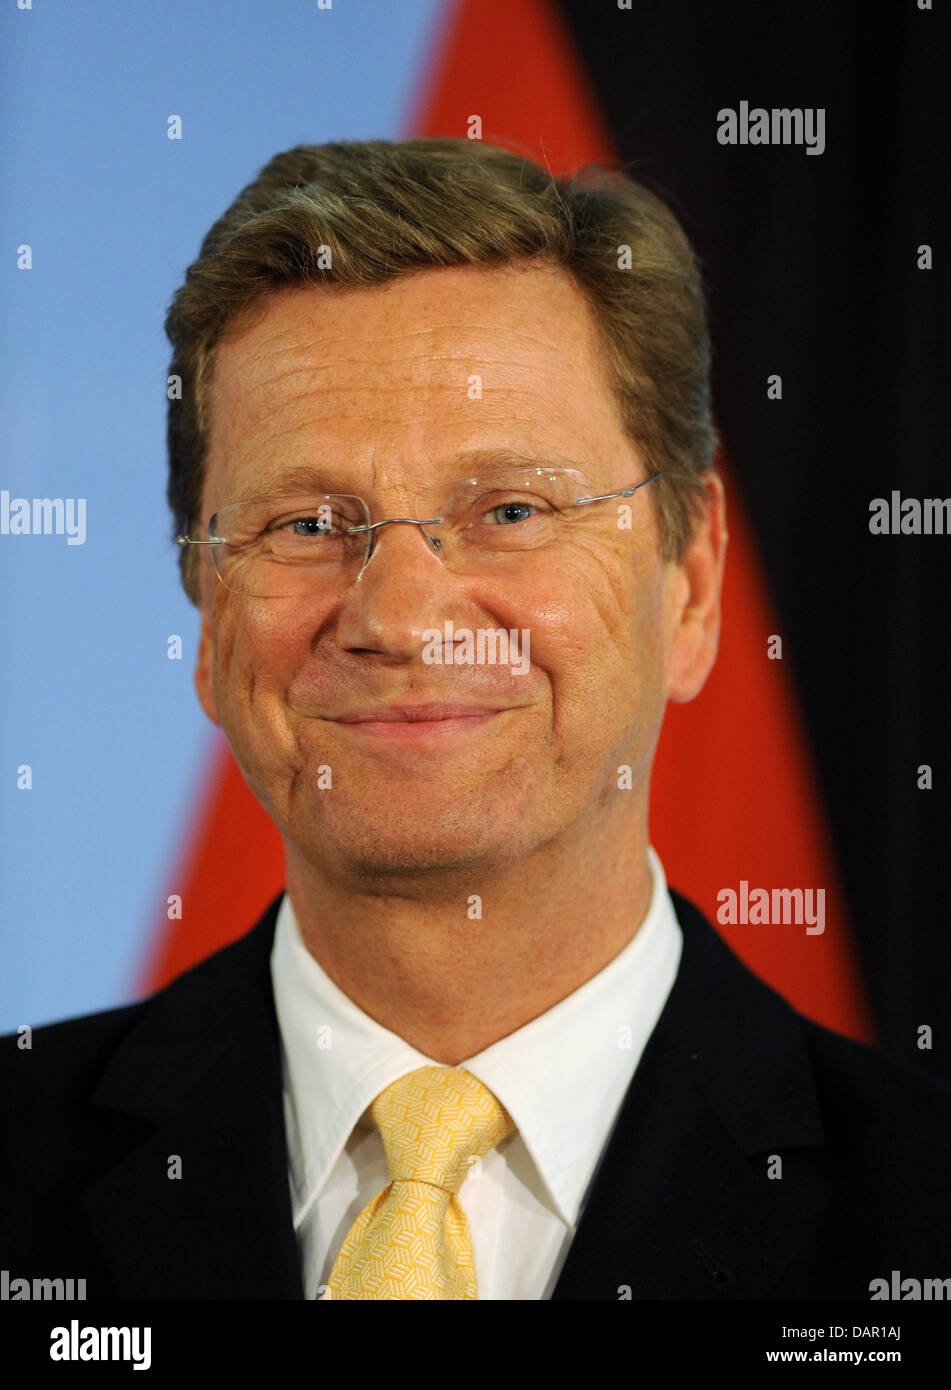 Le ministre des Affaires étrangères allemand Guido Westerwelle est vue du ministère des Affaires étrangères à Berlin, Allemagne, 06 septembre 2011. Photo : Soeren Stache Banque D'Images